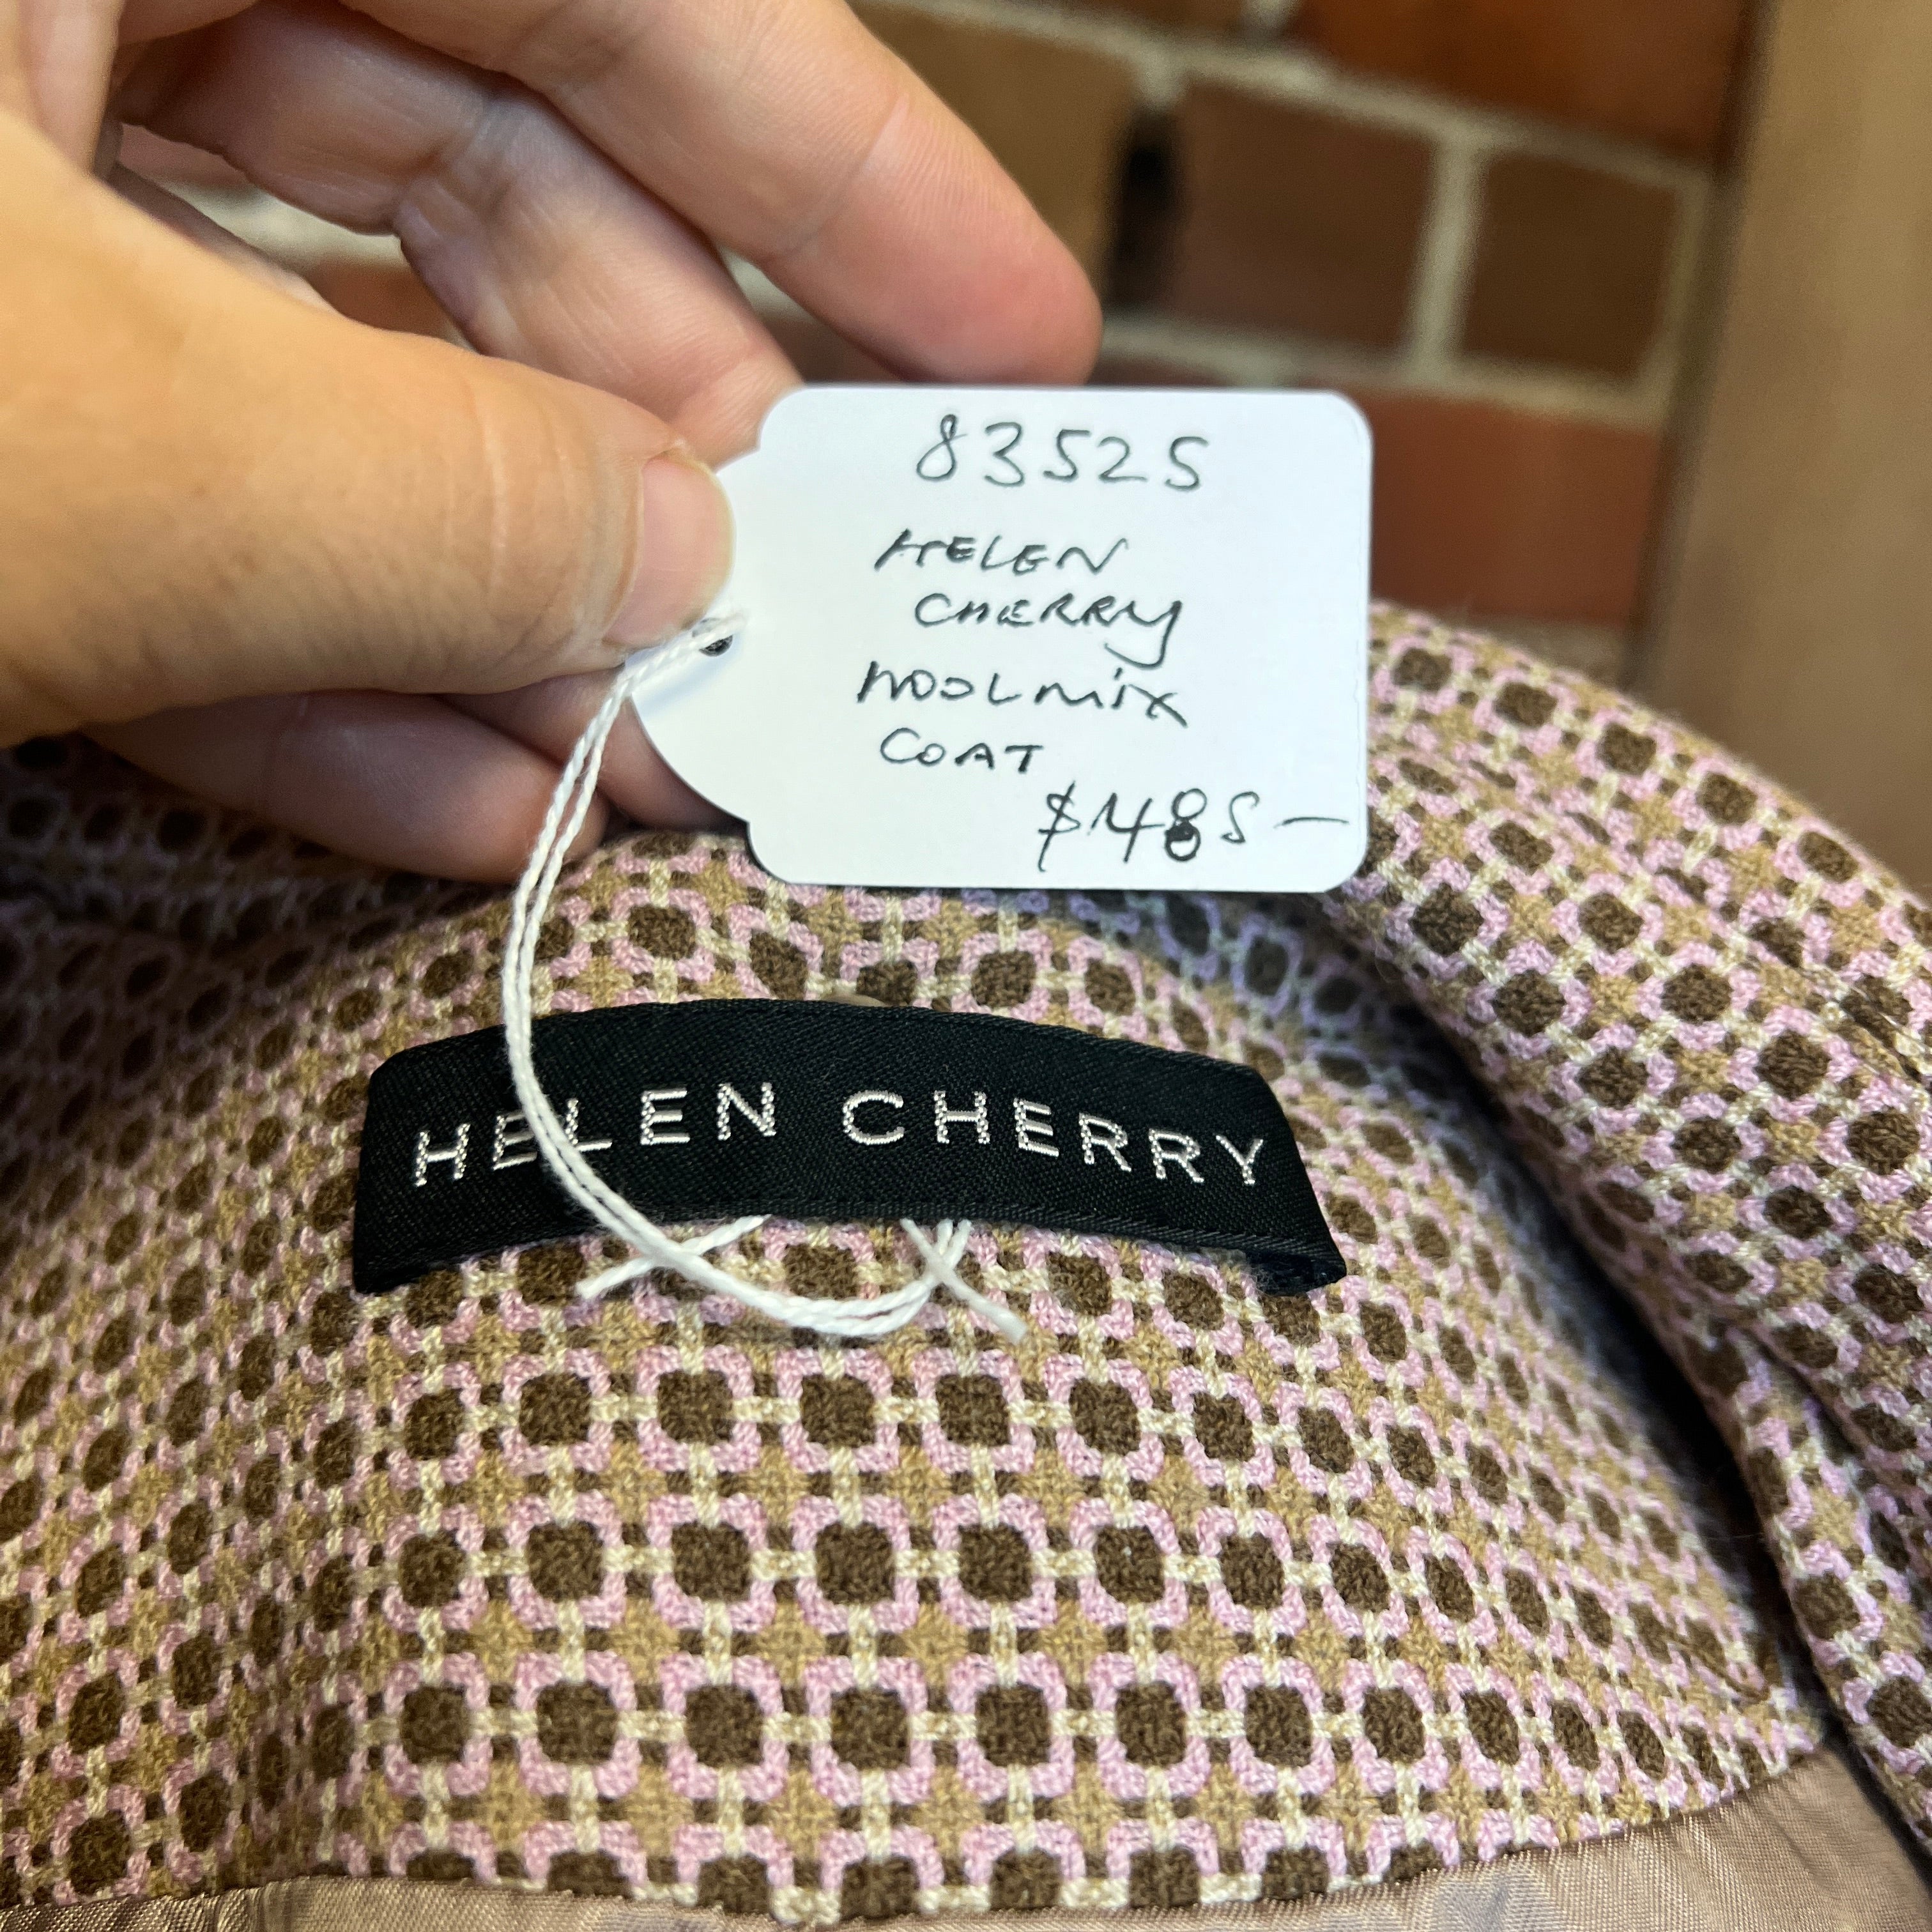 HELEN CHERRY woven coat